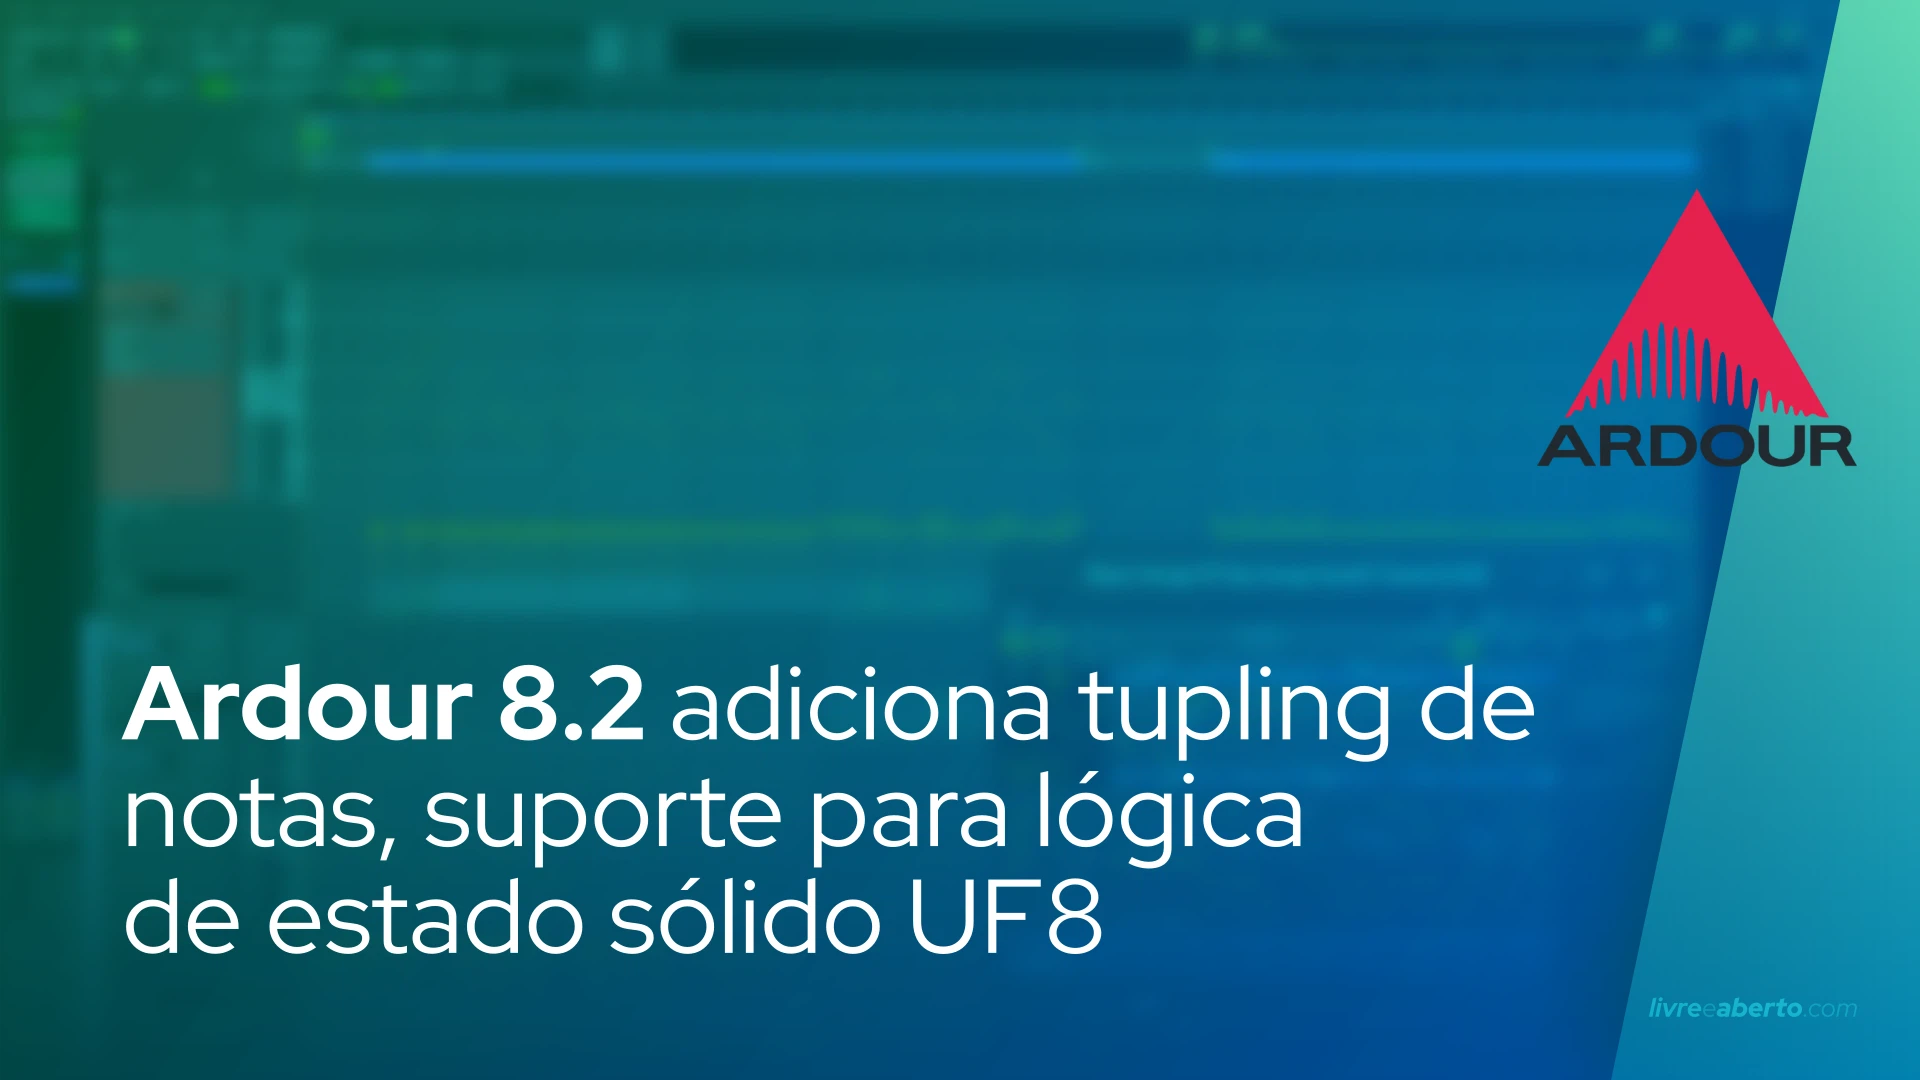 Ardour 8.2 adiciona tupling de notas, suporte para lógica de estado sólido UF8